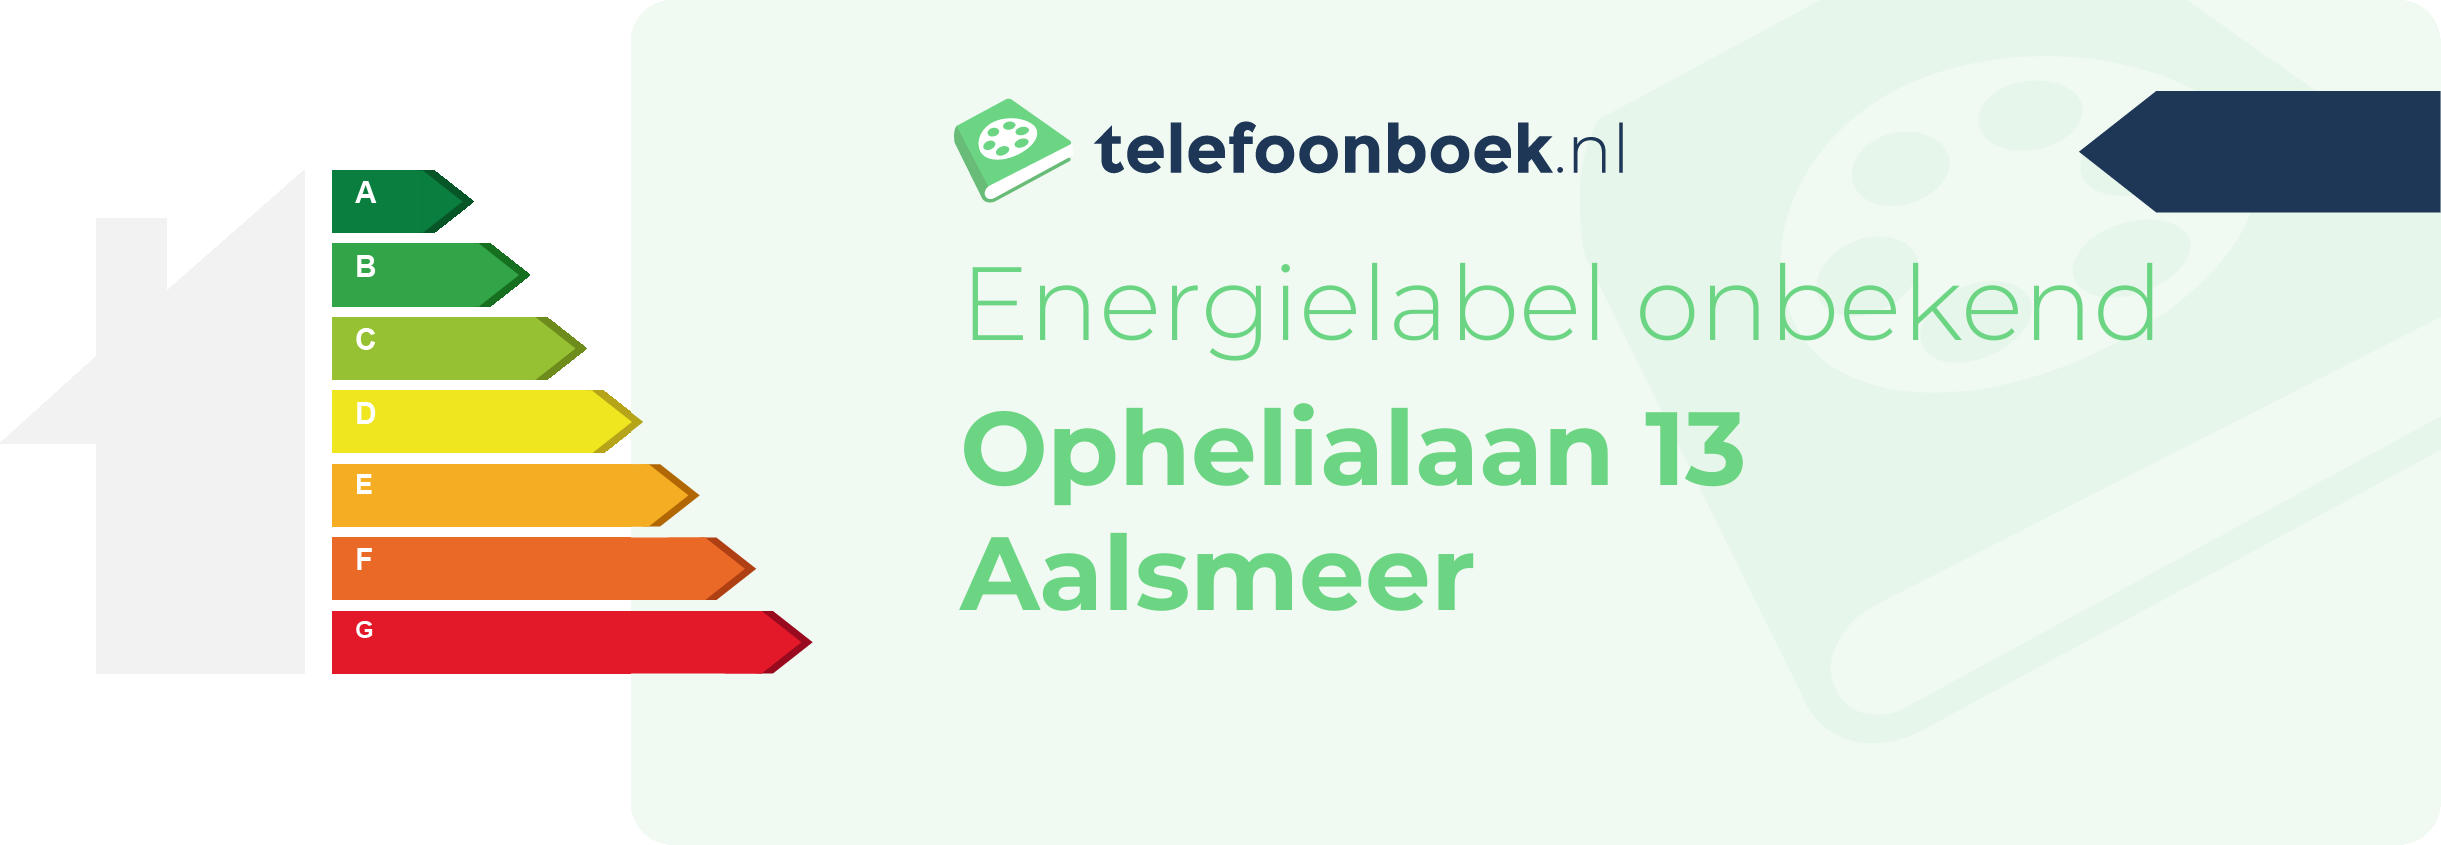 Energielabel Ophelialaan 13 Aalsmeer